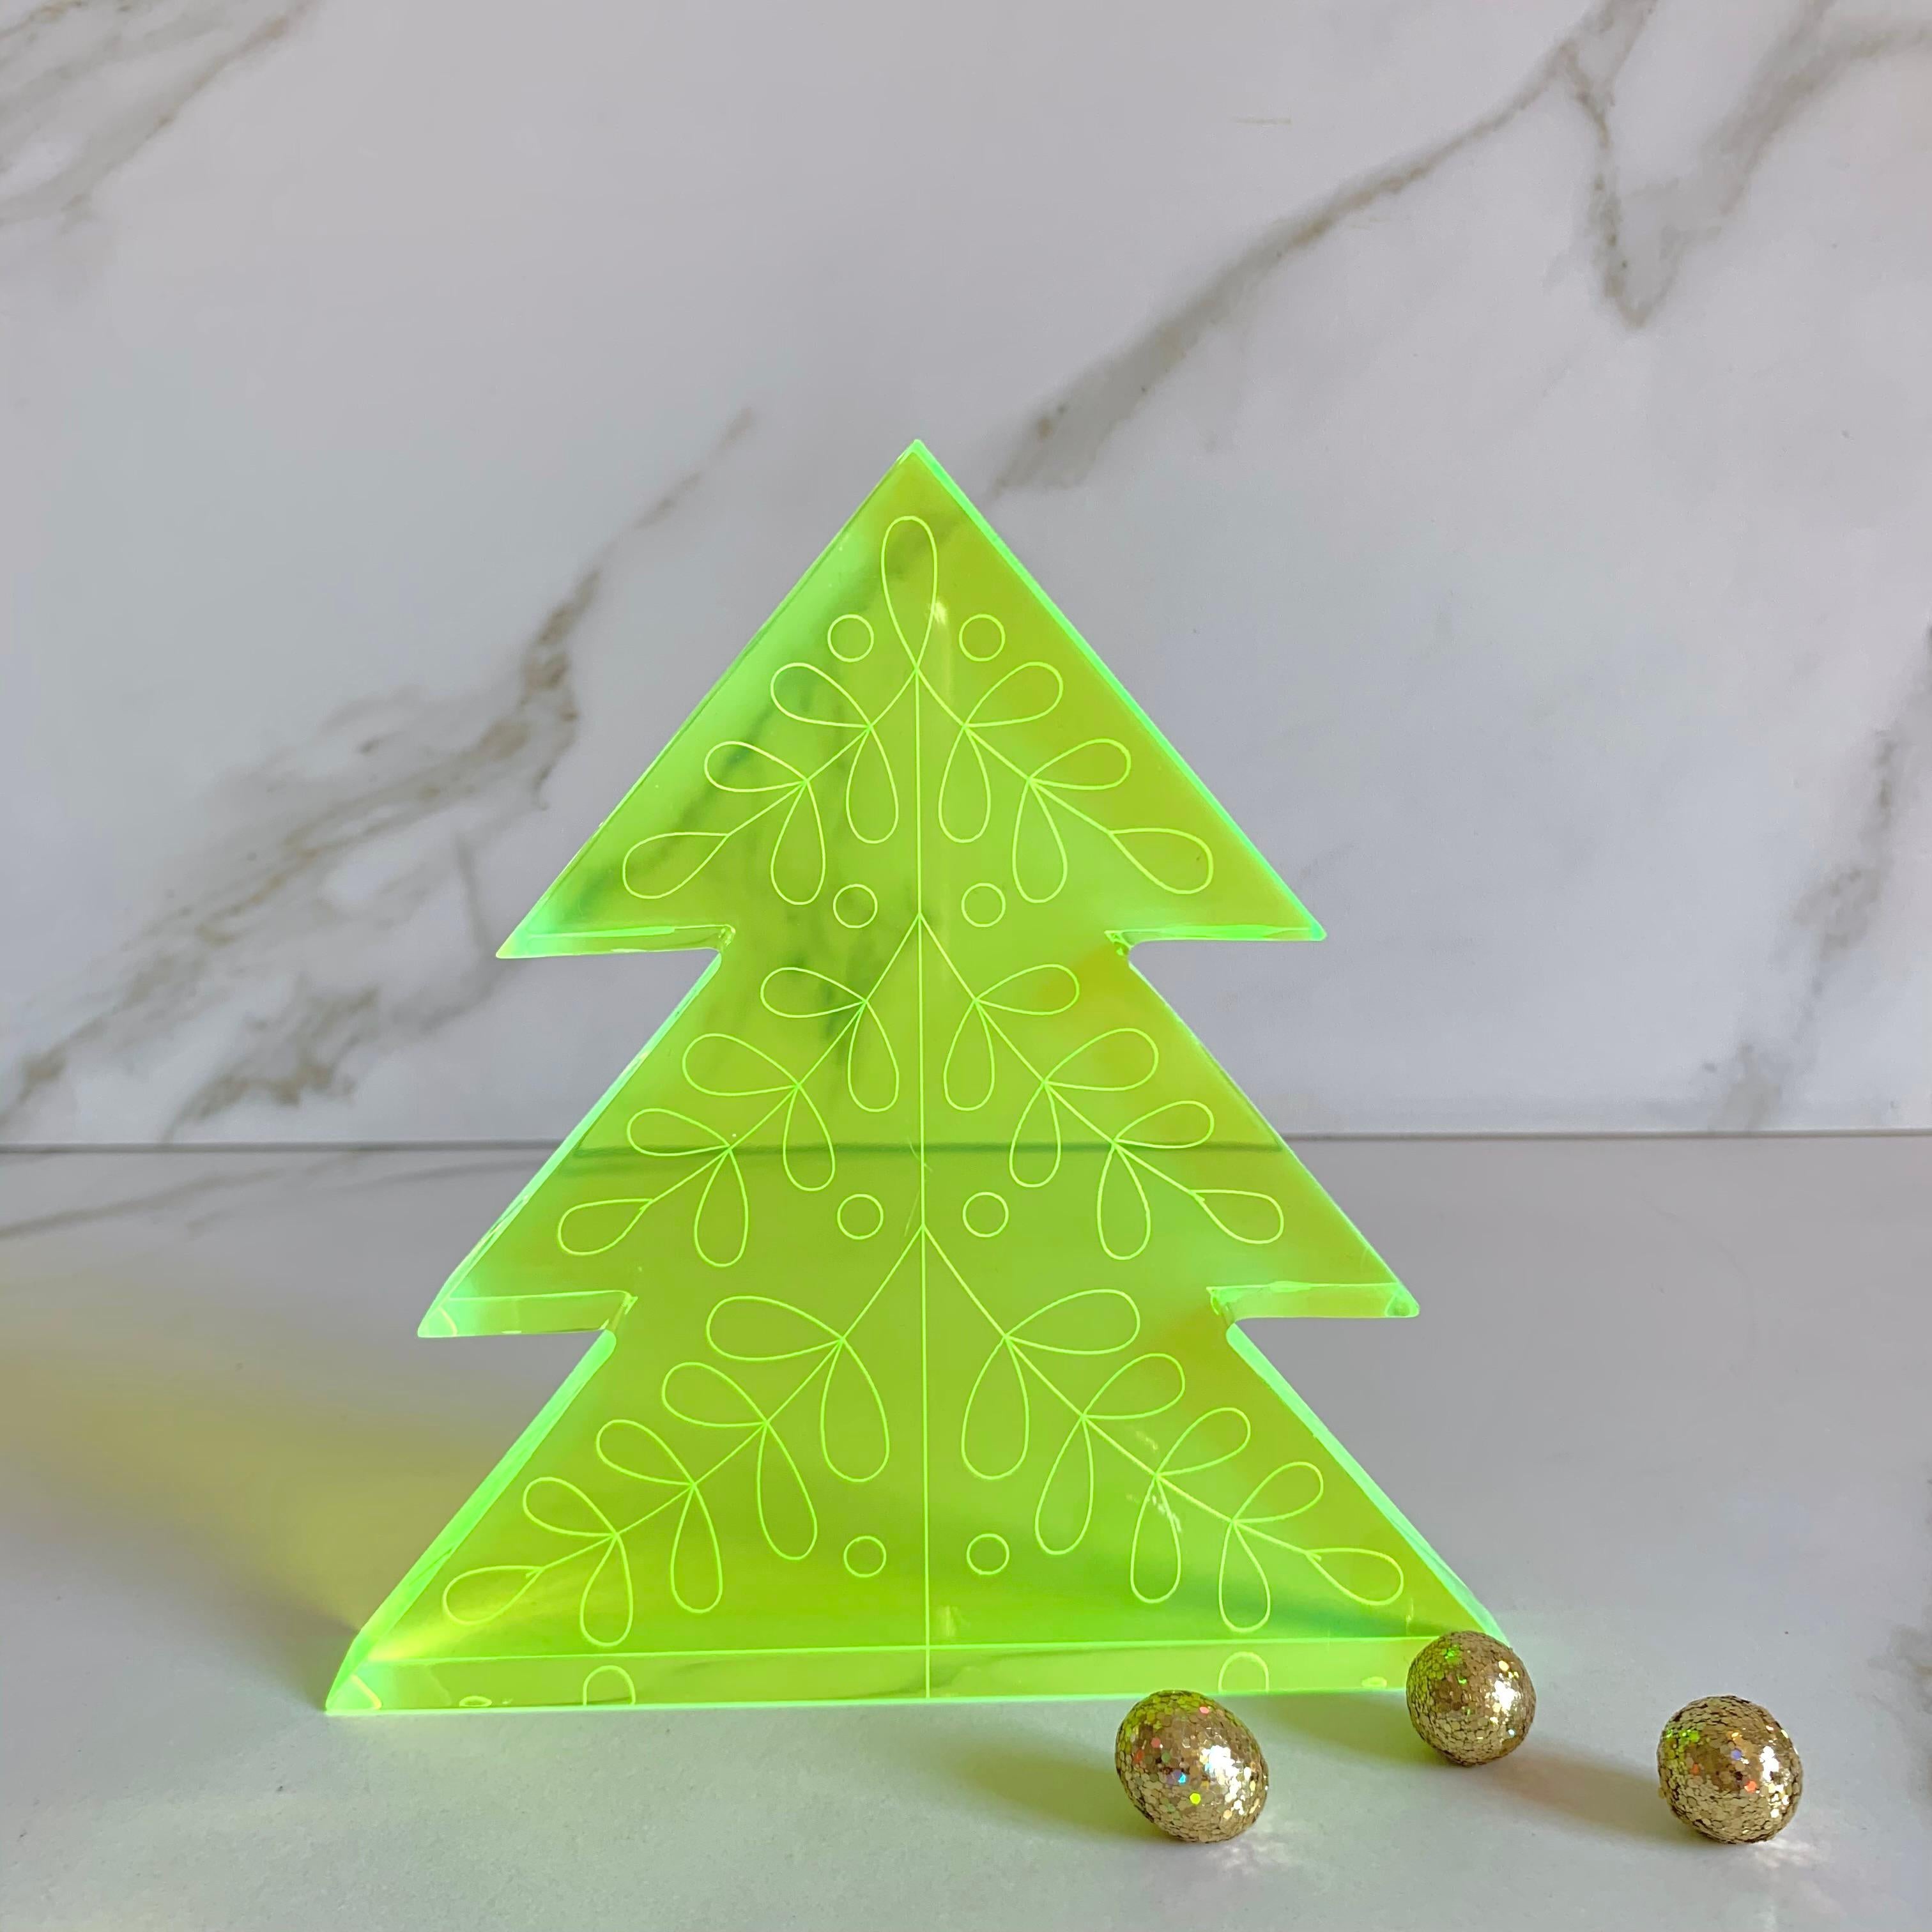 Weihnachten ist eine Zeit der Freude, und das bedeutet für uns Farbe! Feiern Sie die Weihnachtszeit mit diesen farbenfrohen, lustigen und modernen Weihnachtsbaum-Skulpturen und geben Sie der traditionellen Weihnachtsfarbpalette eine neue Wendung.